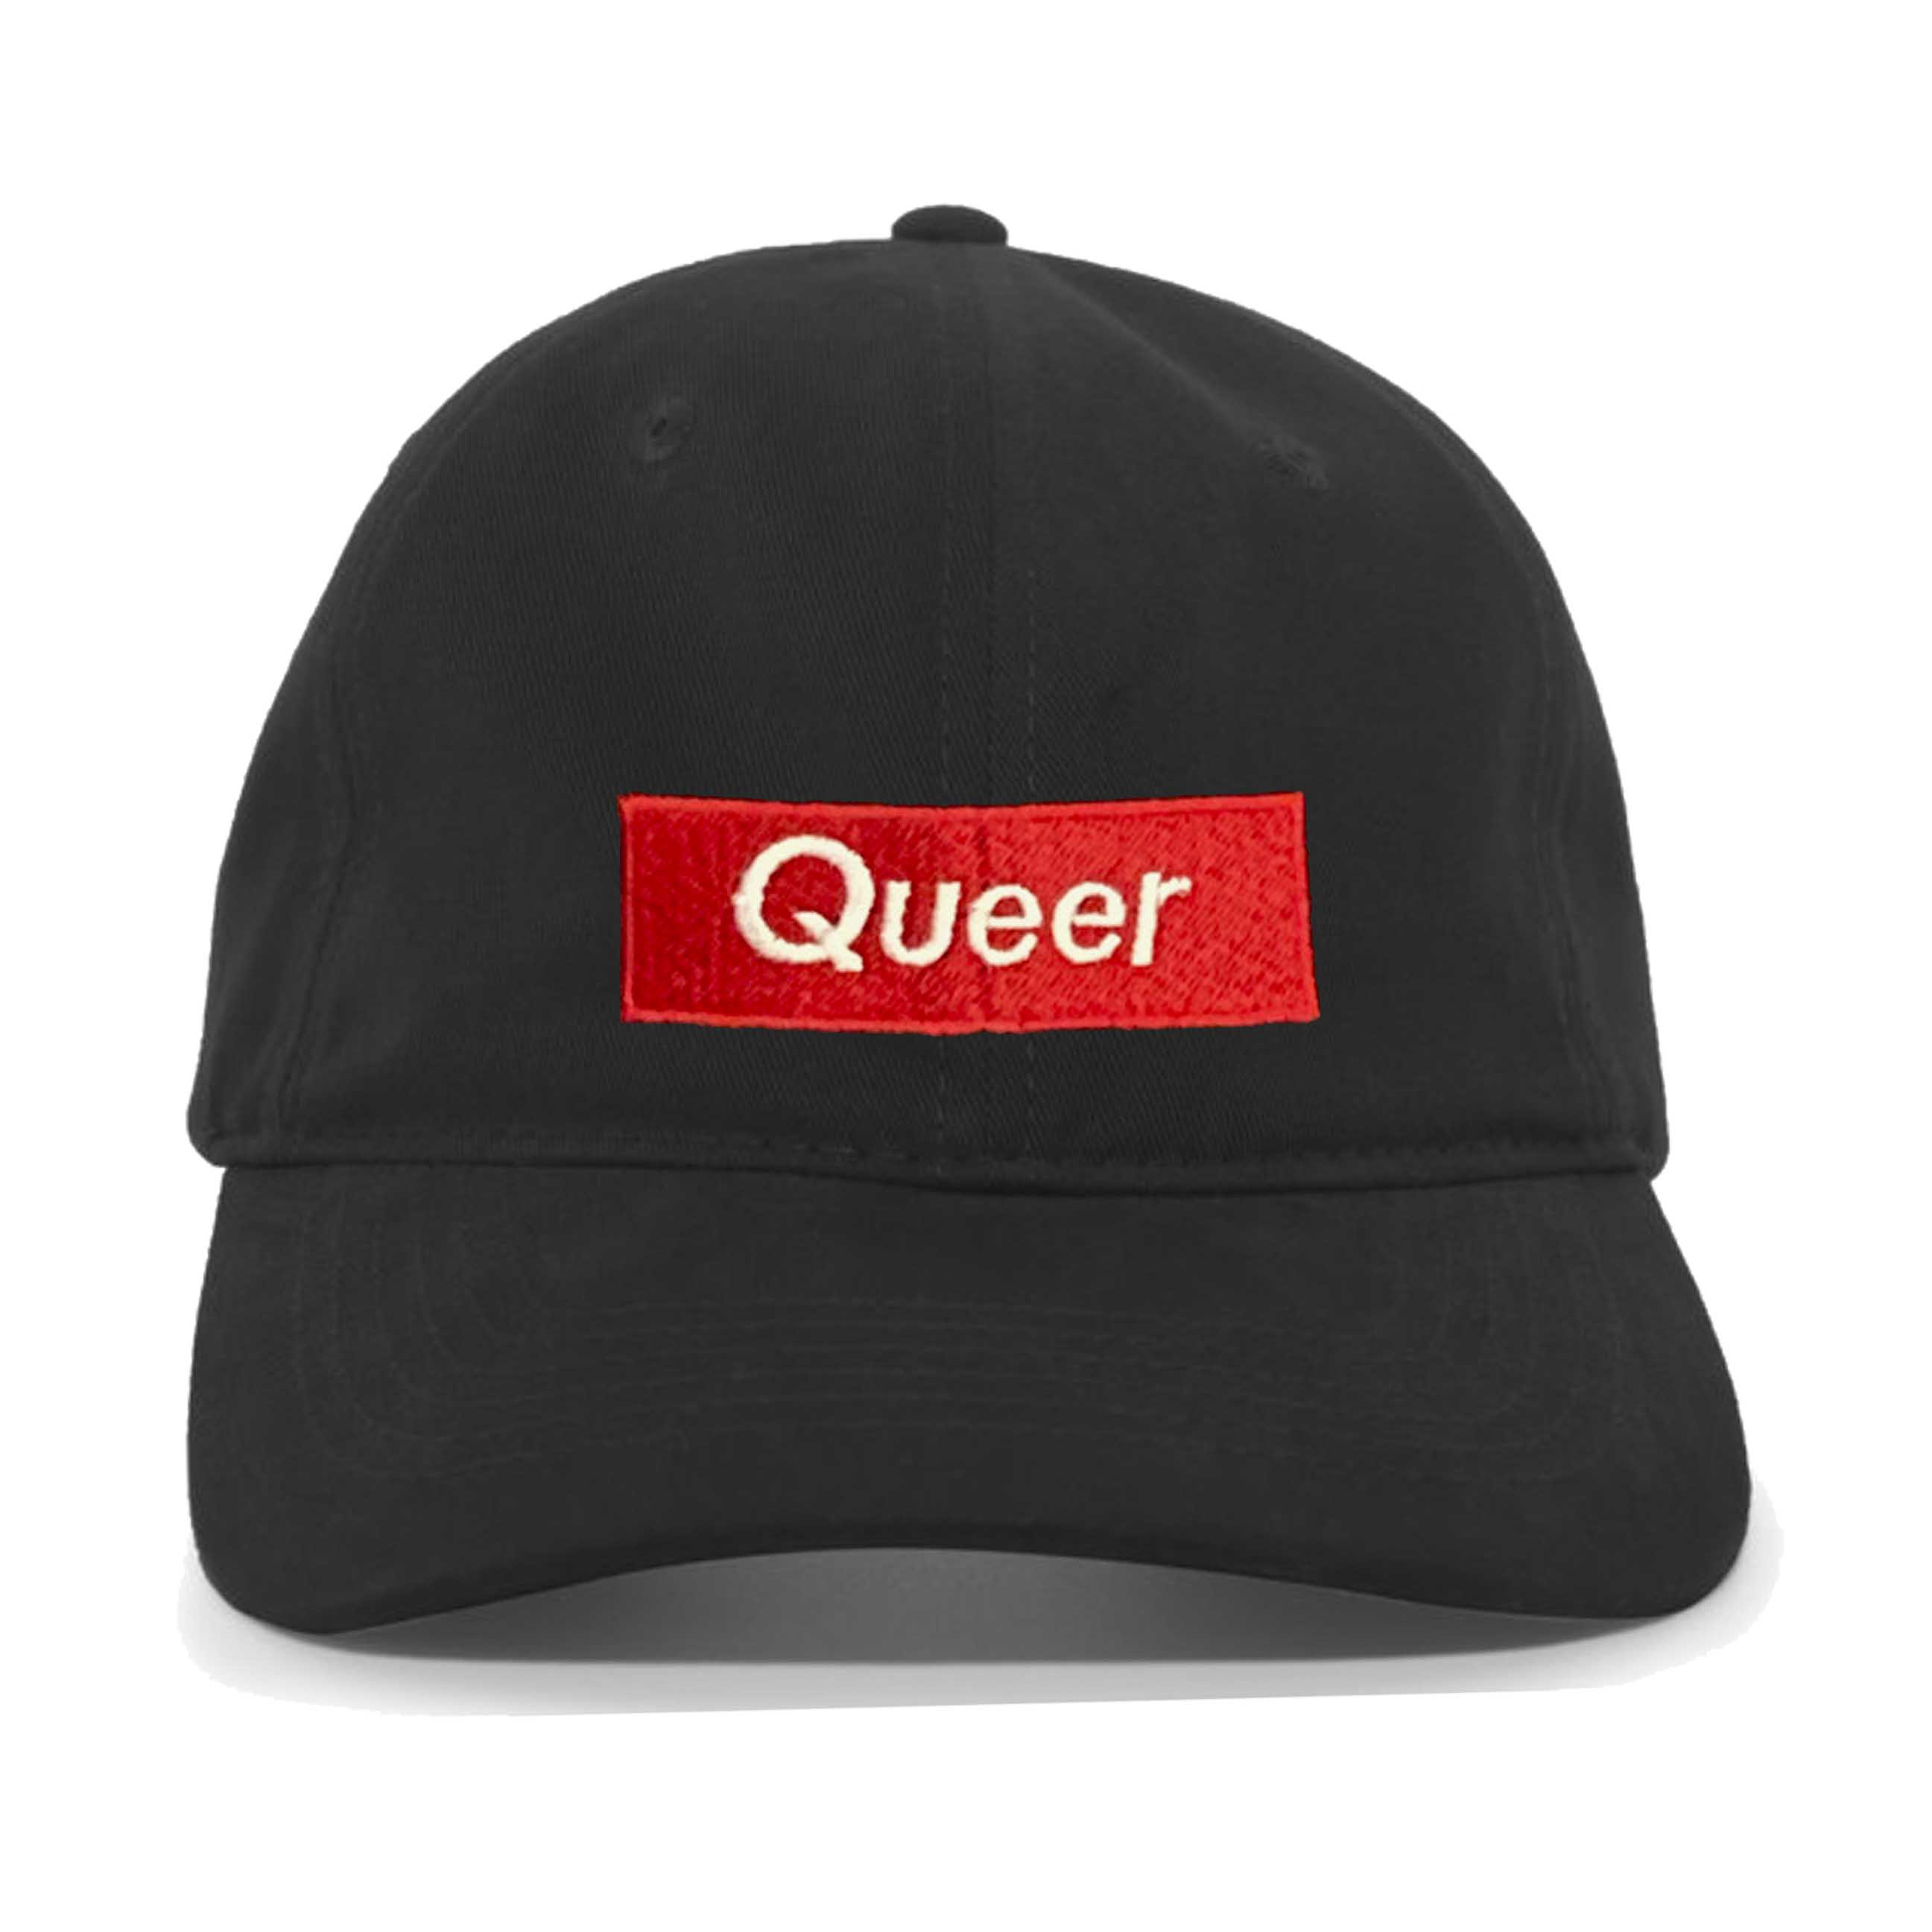 Queer Dad Twill Adjustable Hat Black